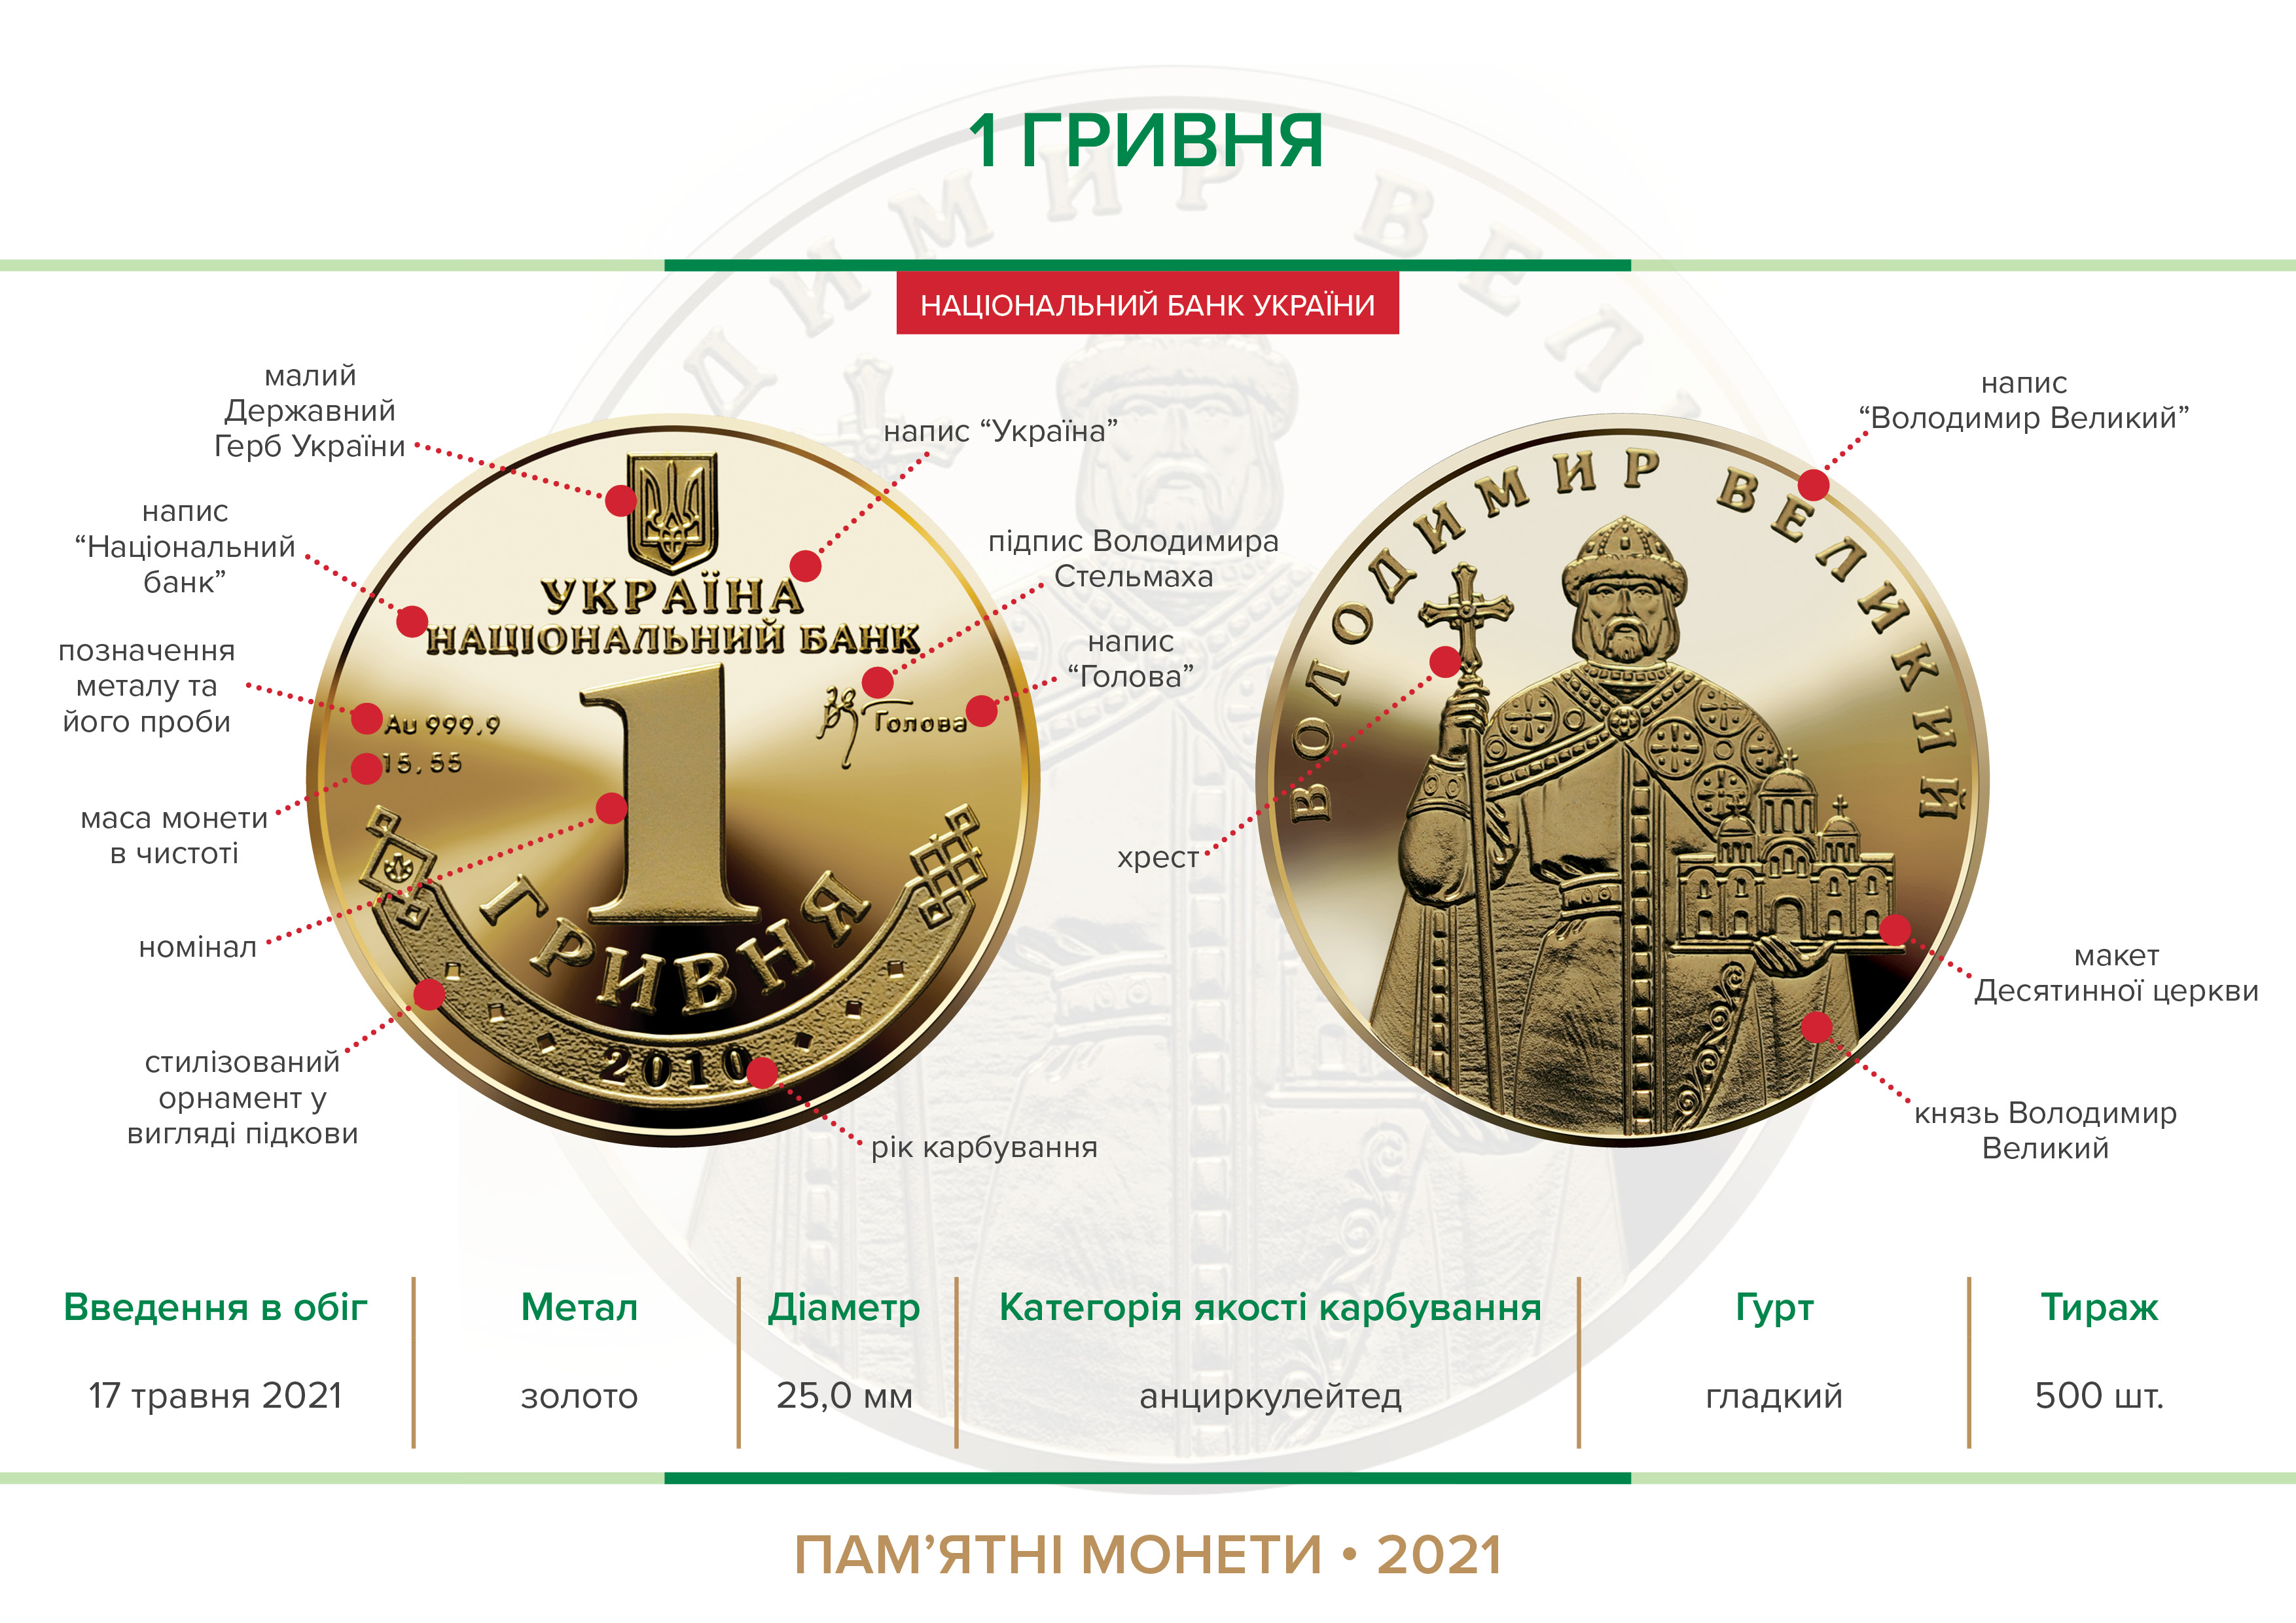 Наступний аукціон з продажу пам’ятної монети "1 Гривня" відбудеться 03 червня 2021 року